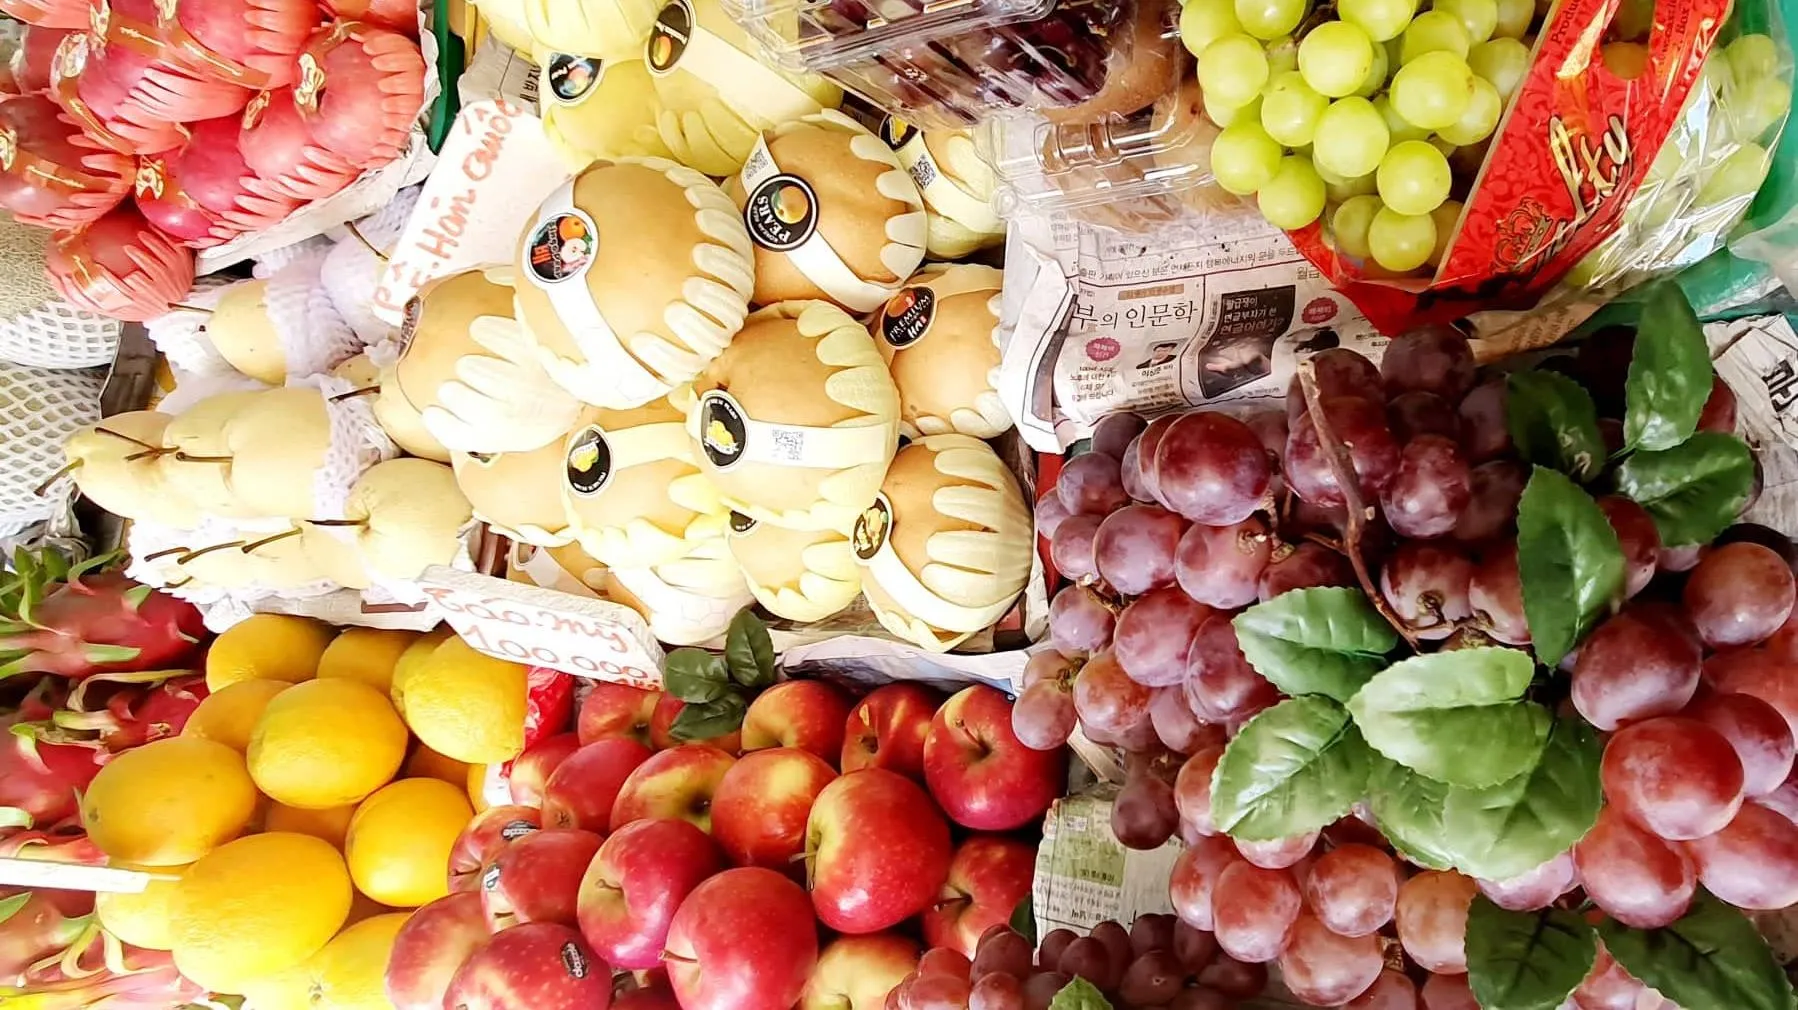 Giá cả thị trường: Giá trái cây tháng 7 âm lịch ở mức cao